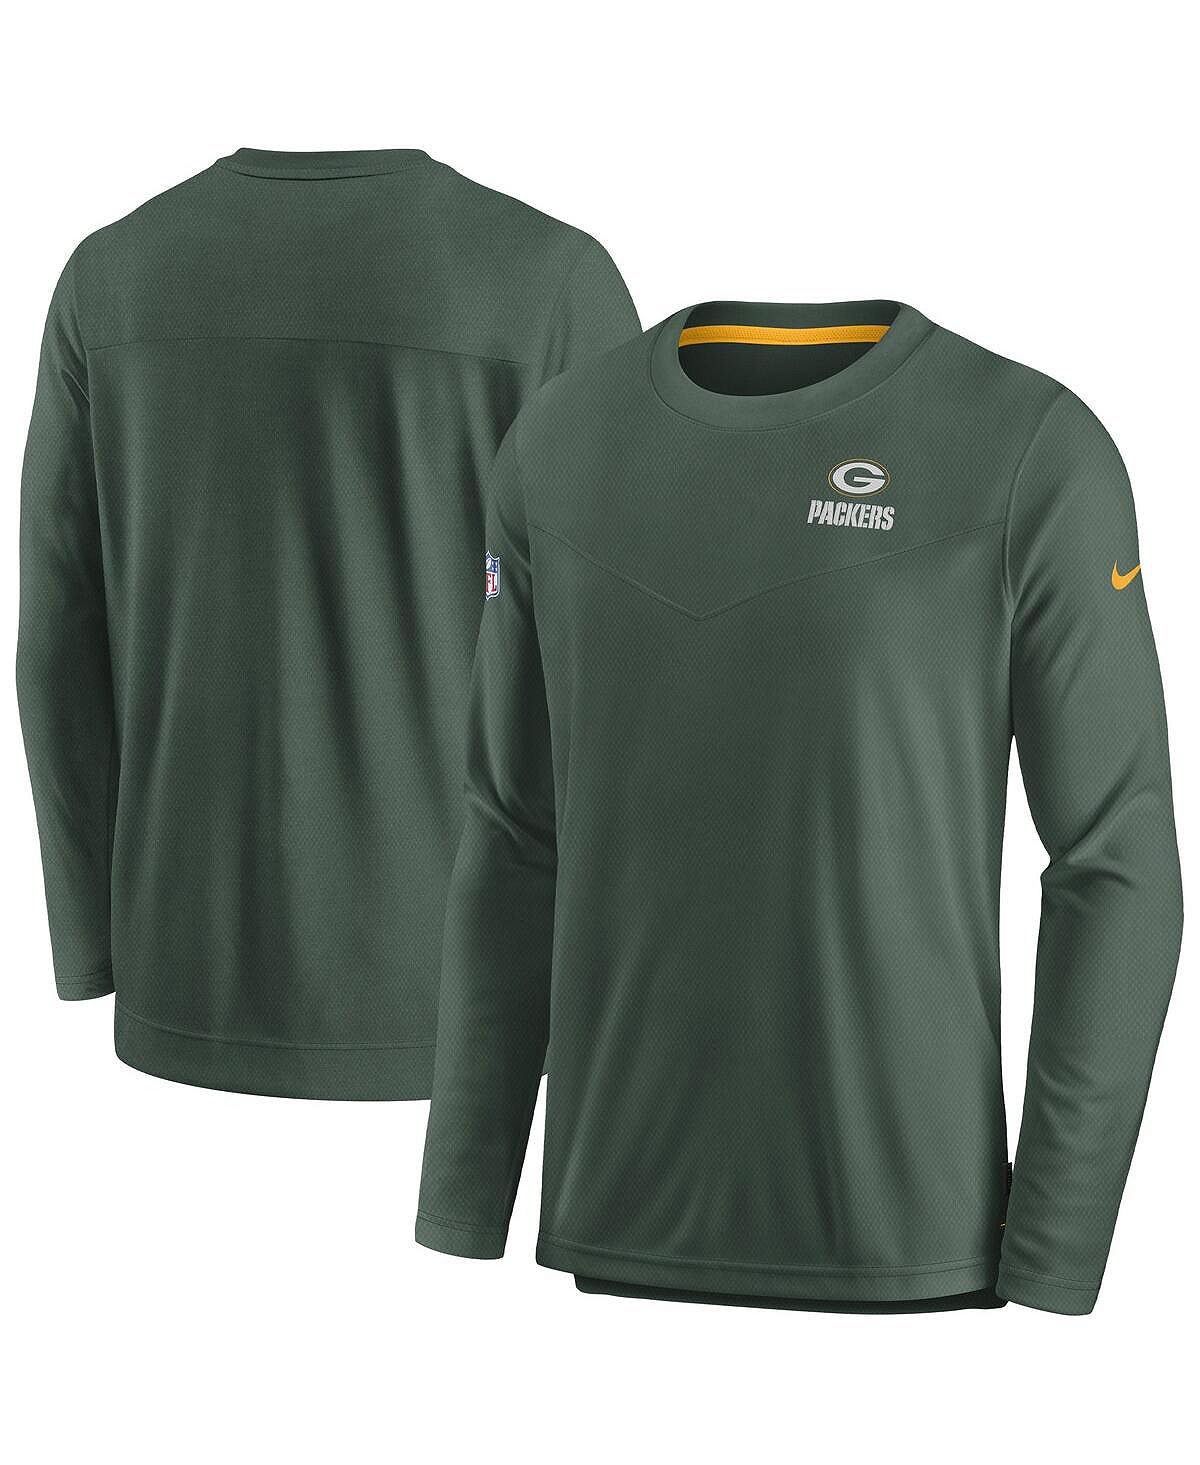 цена Мужская футболка с длинным рукавом green green bay packers sideline lockup performance Nike, зеленый